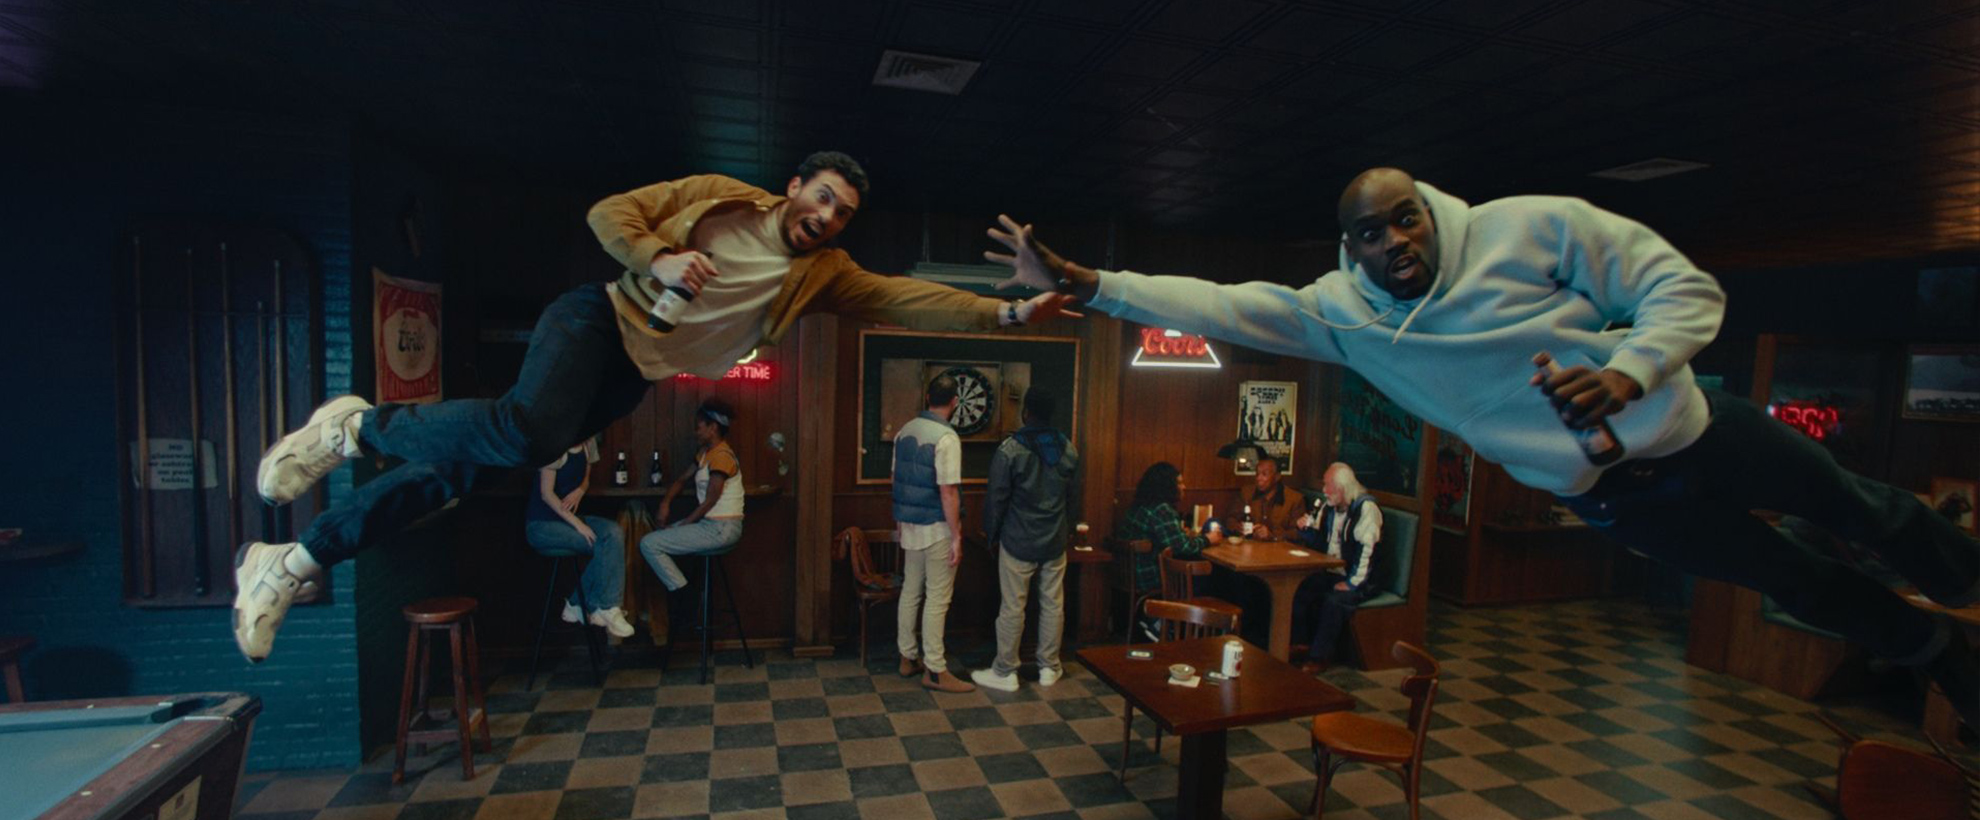 Two men leap sideways in a bar